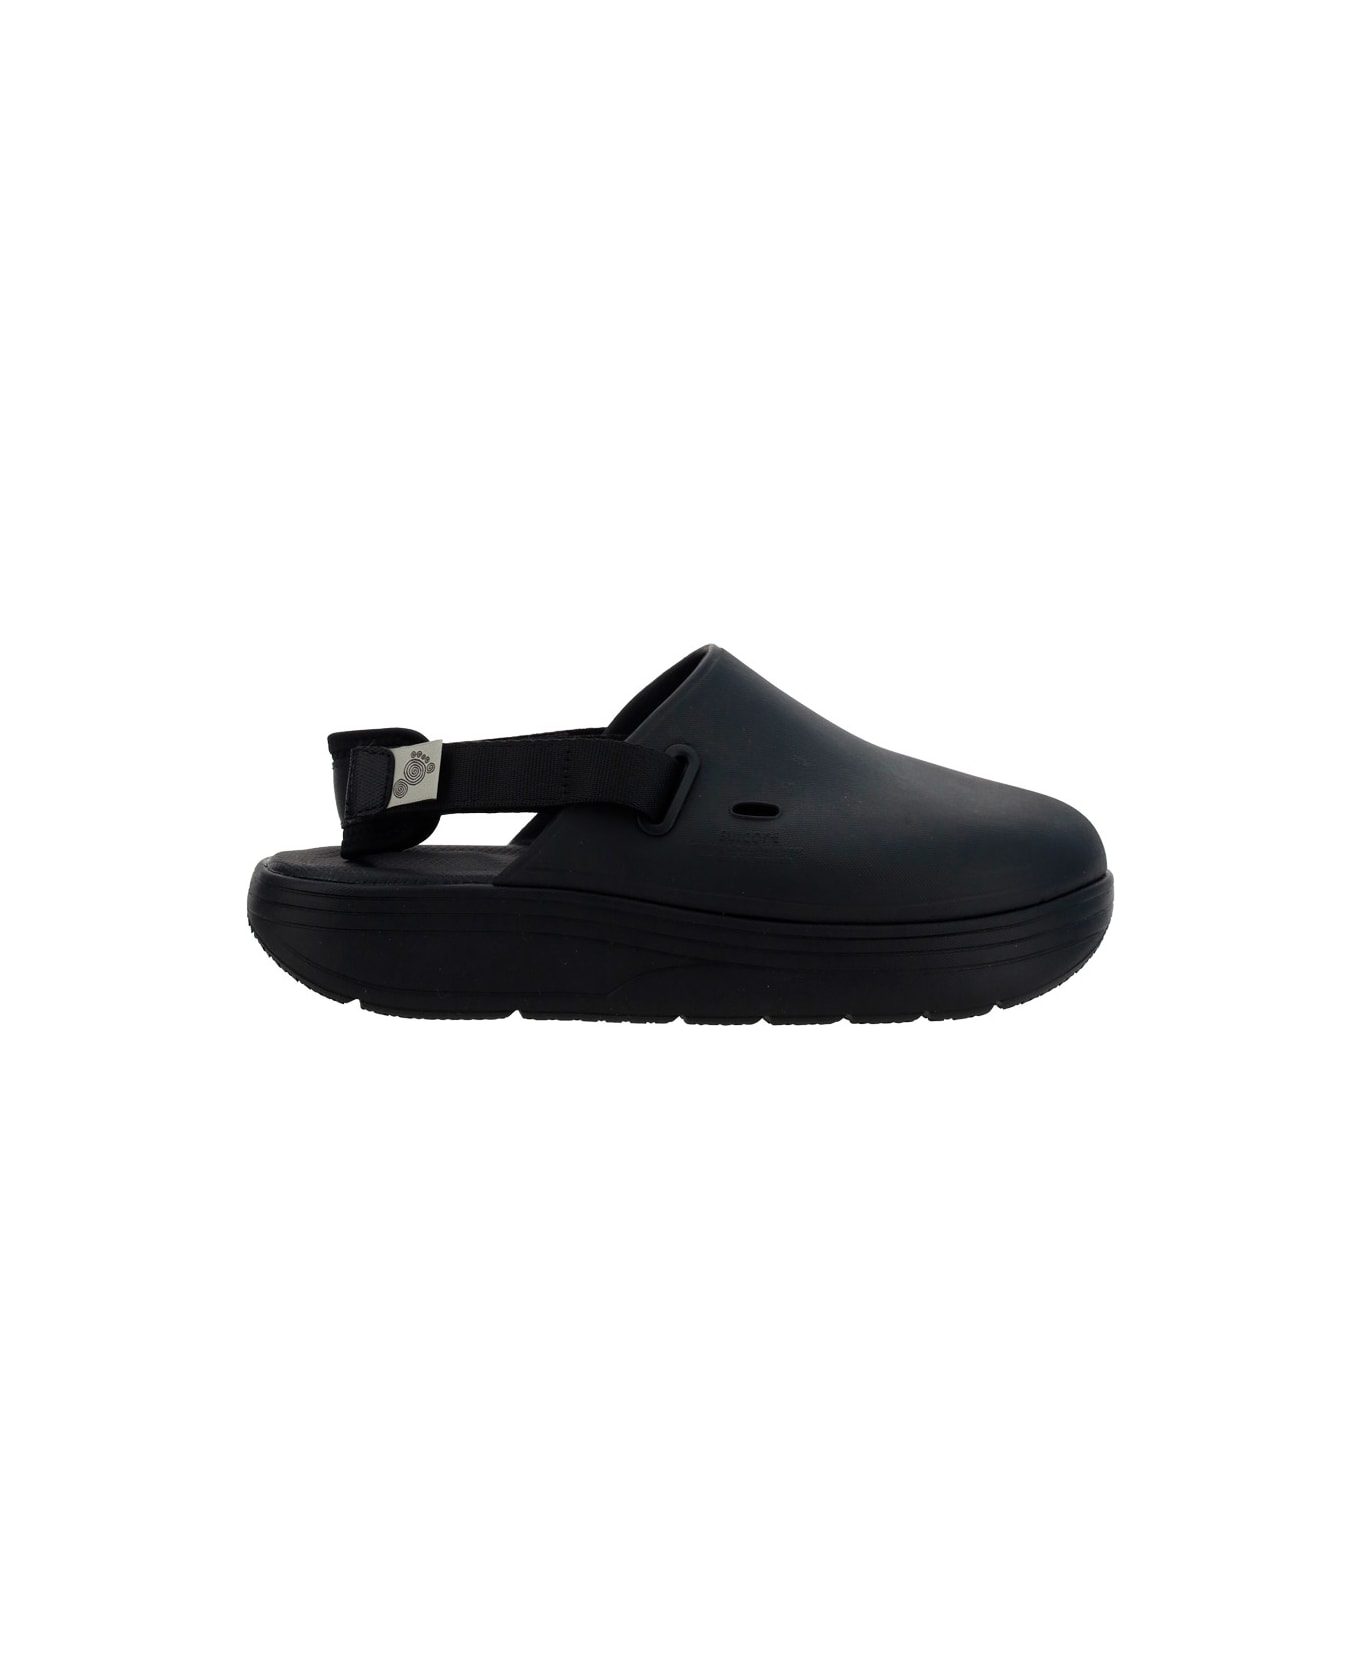 SUICOKE Cappo Sandals - Blk Black